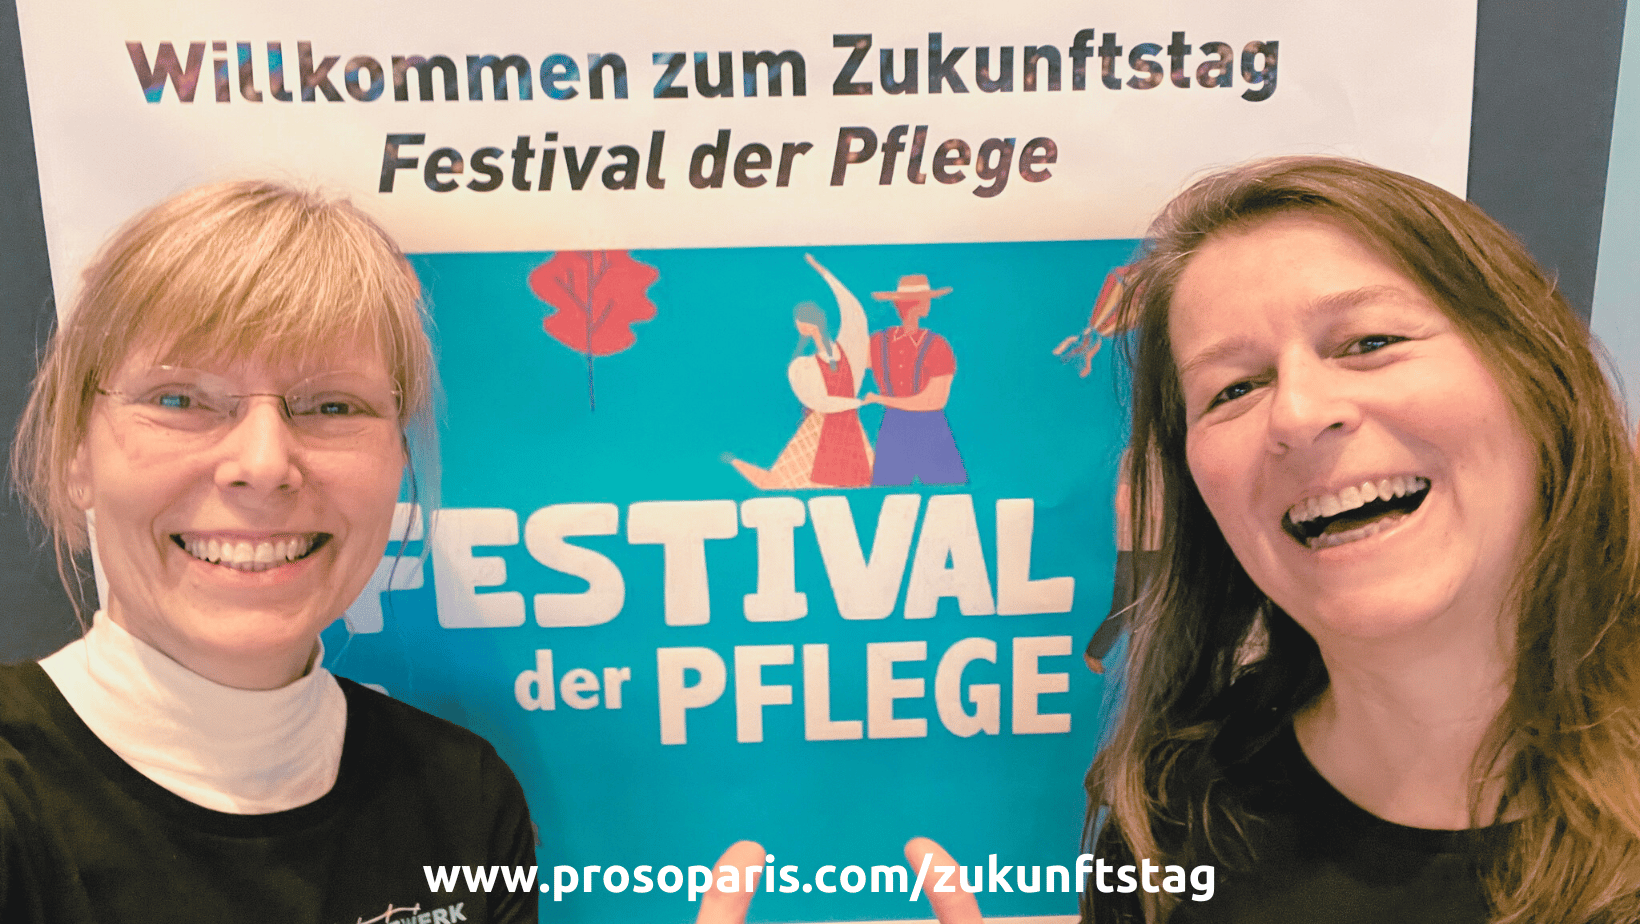 Zukunftstag, Festival der Pflege, Petra Prosoparis